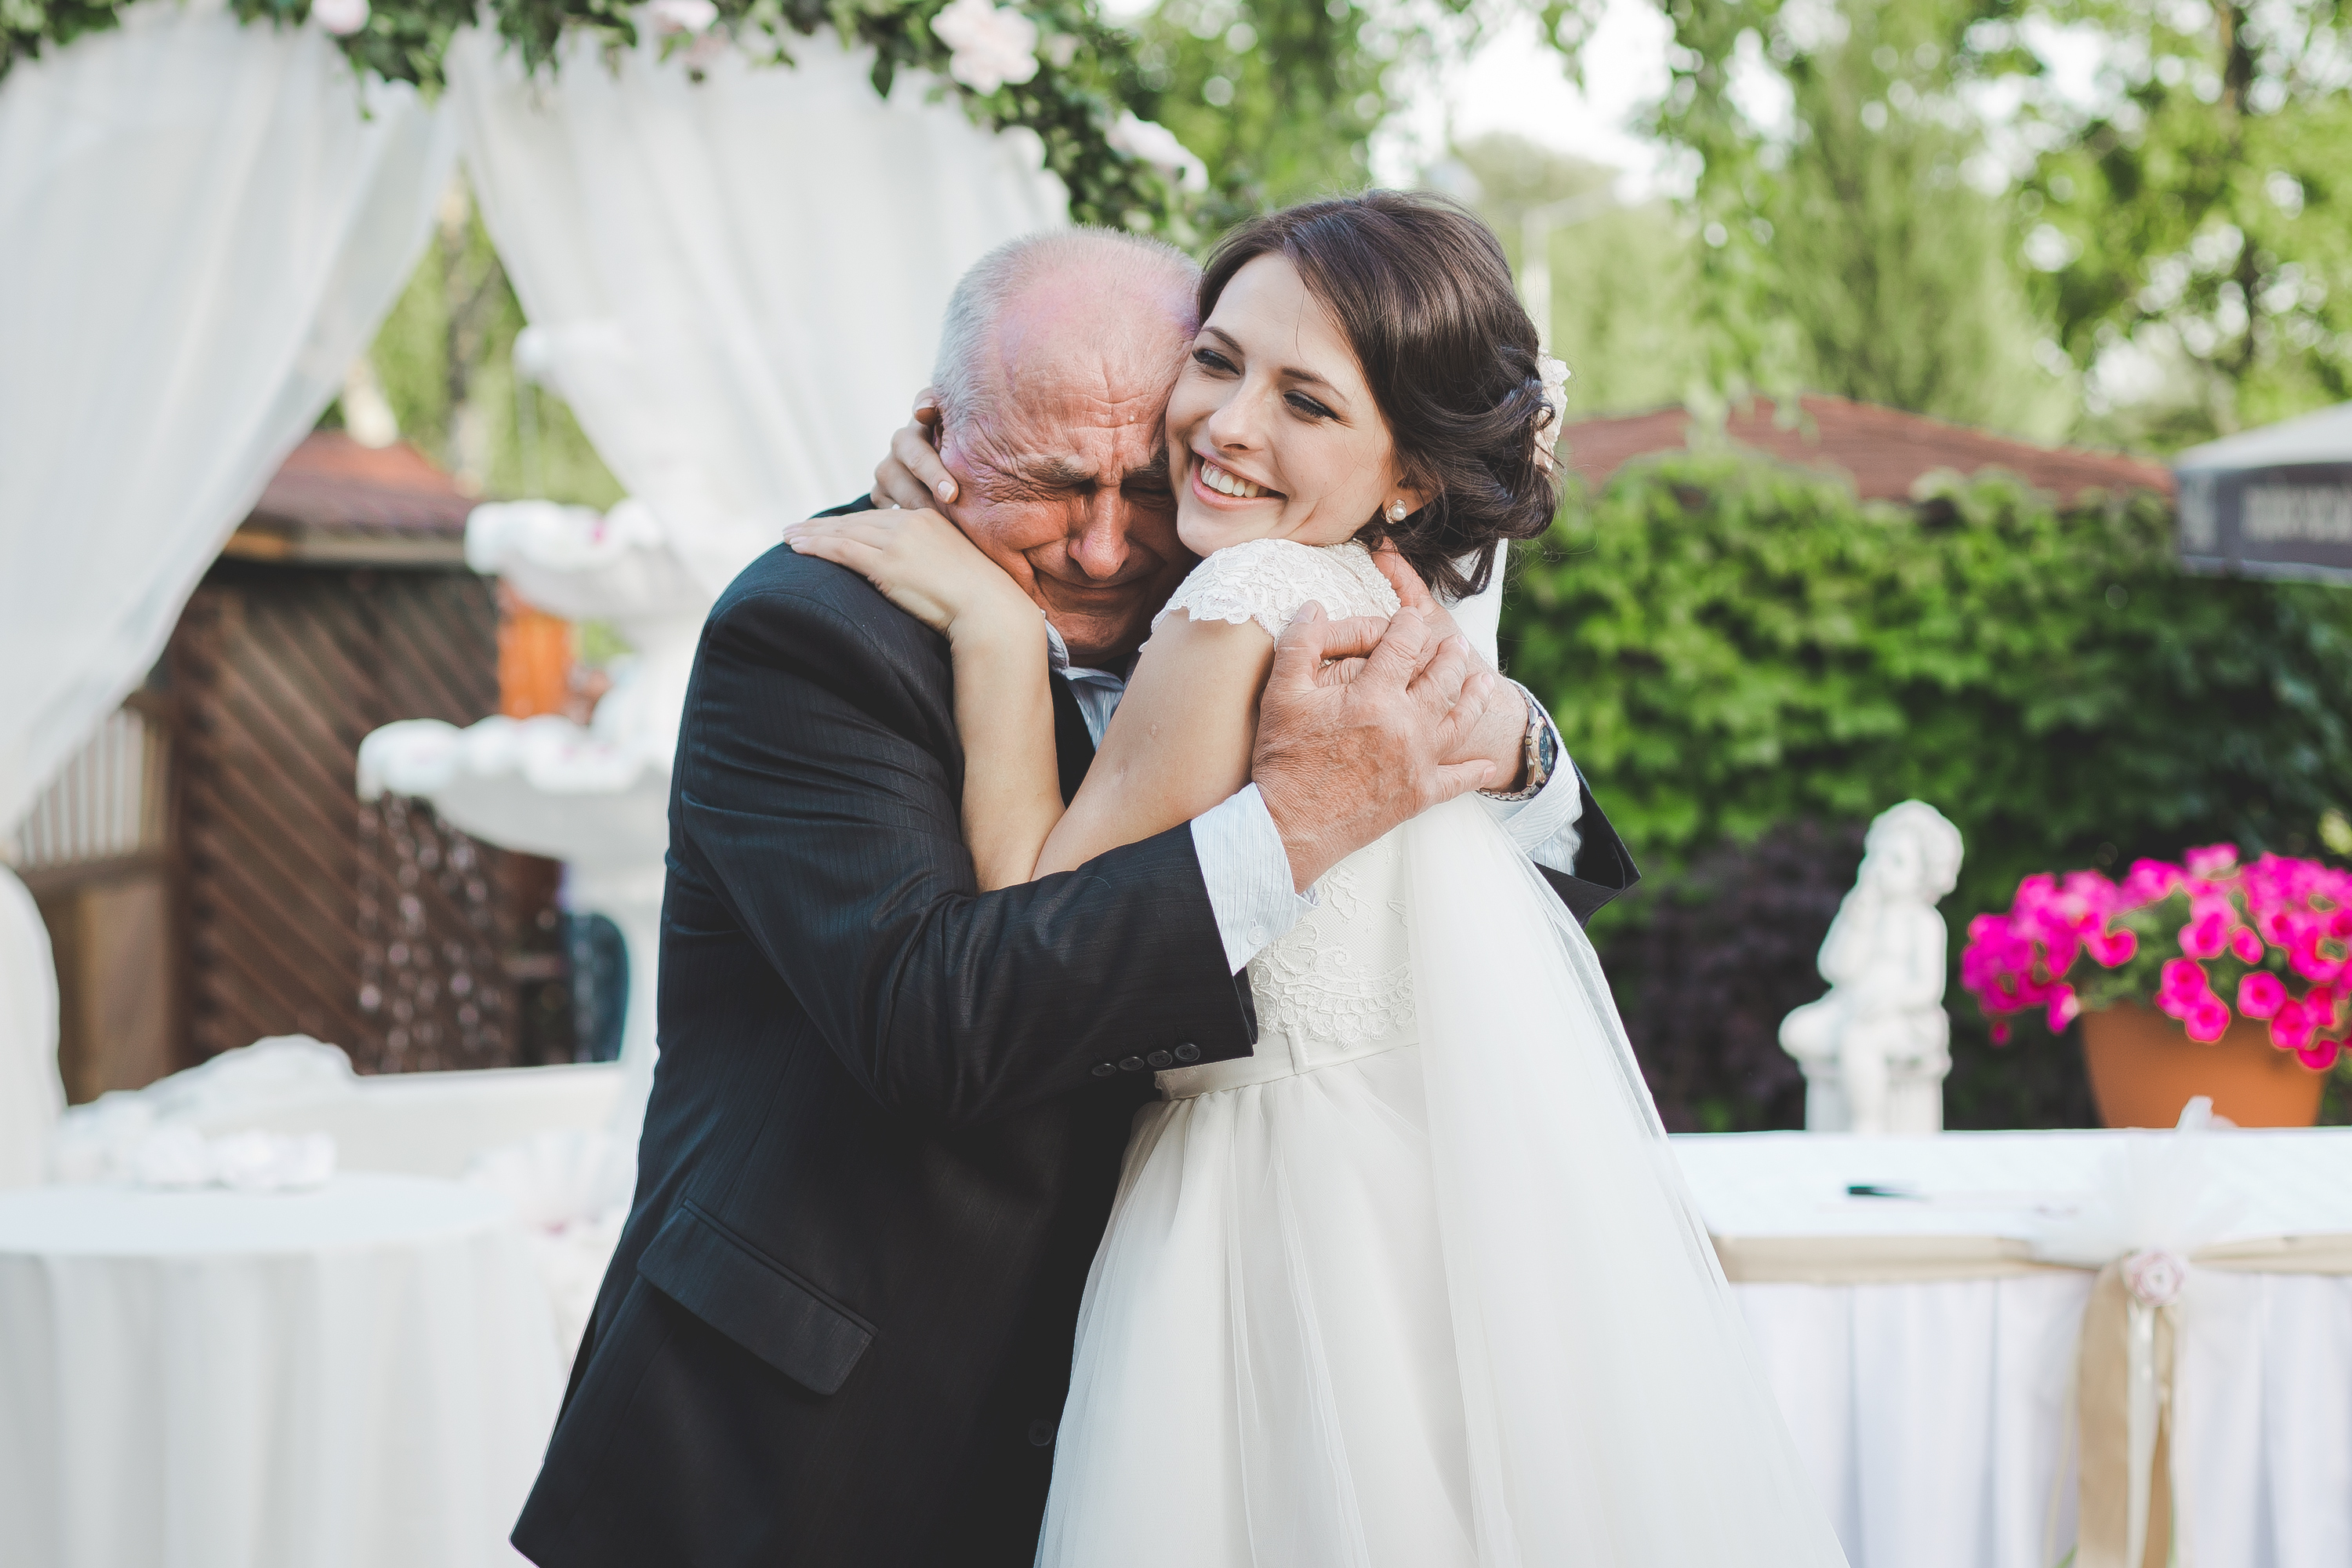 Die Braut lächelt, während sie einen älteren Mann umarmt. | Quelle: Shutterstock